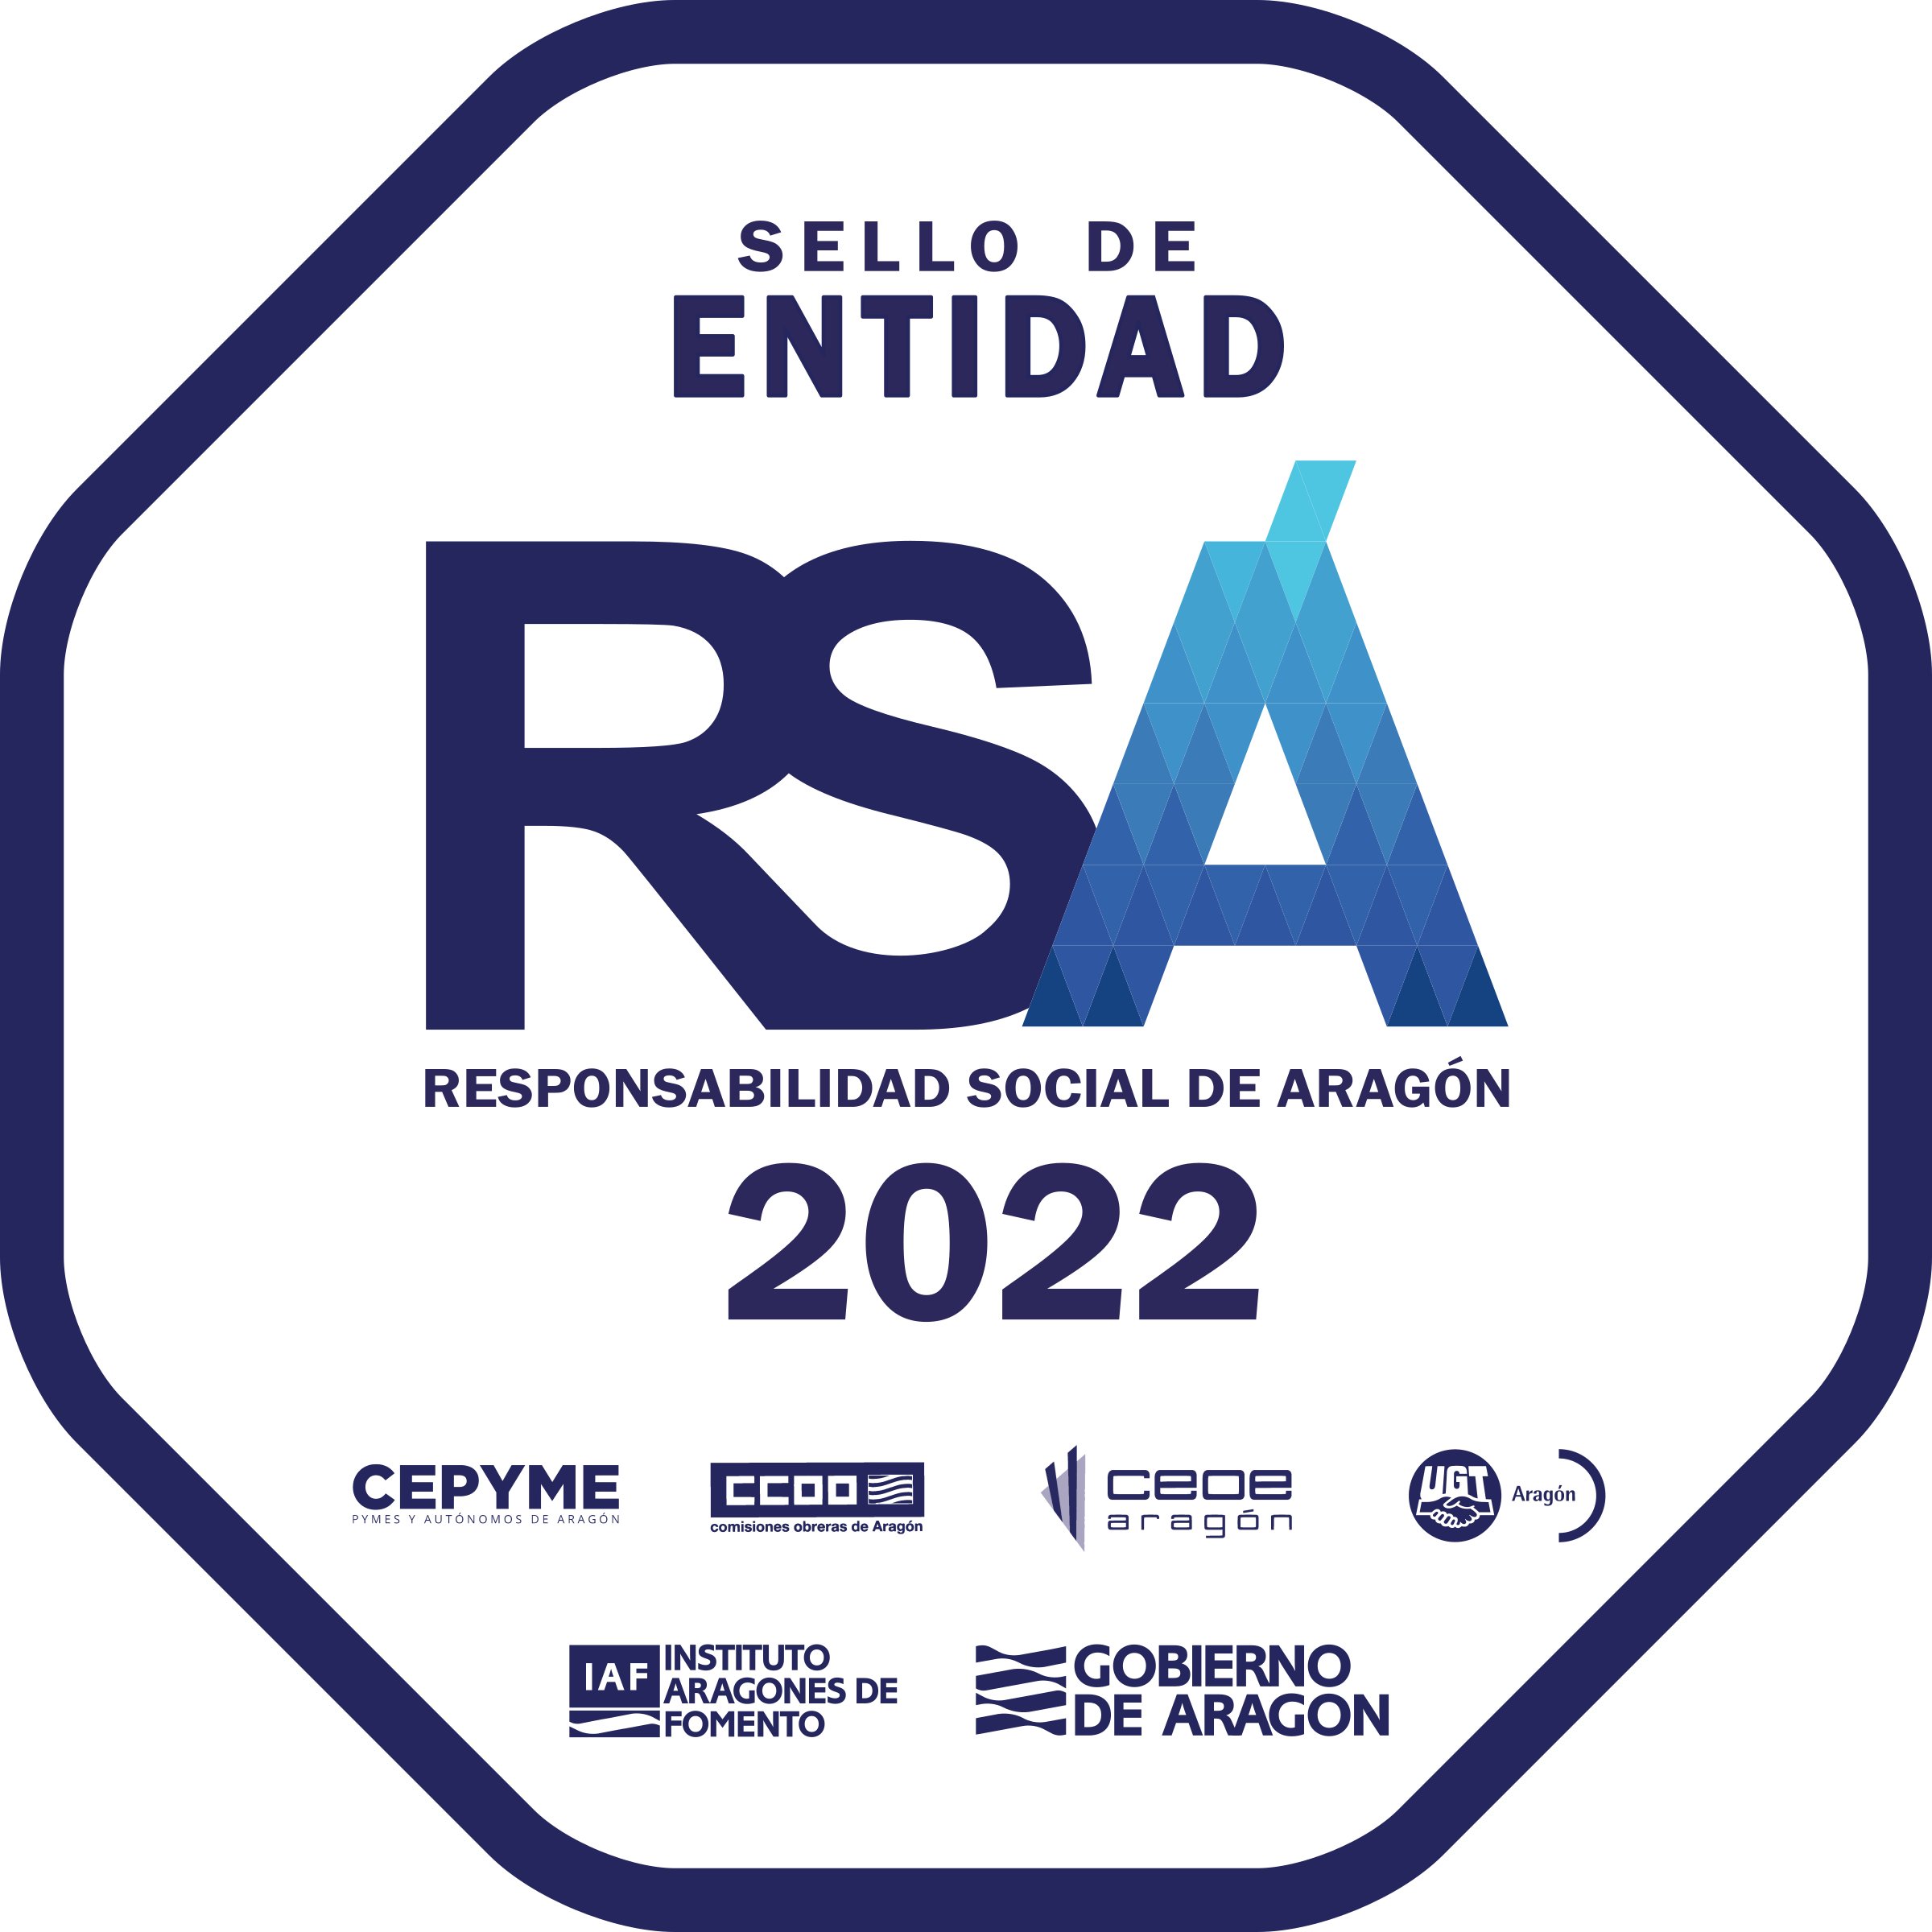 Sello de Responsabilidad Social de Aragón (RSA)